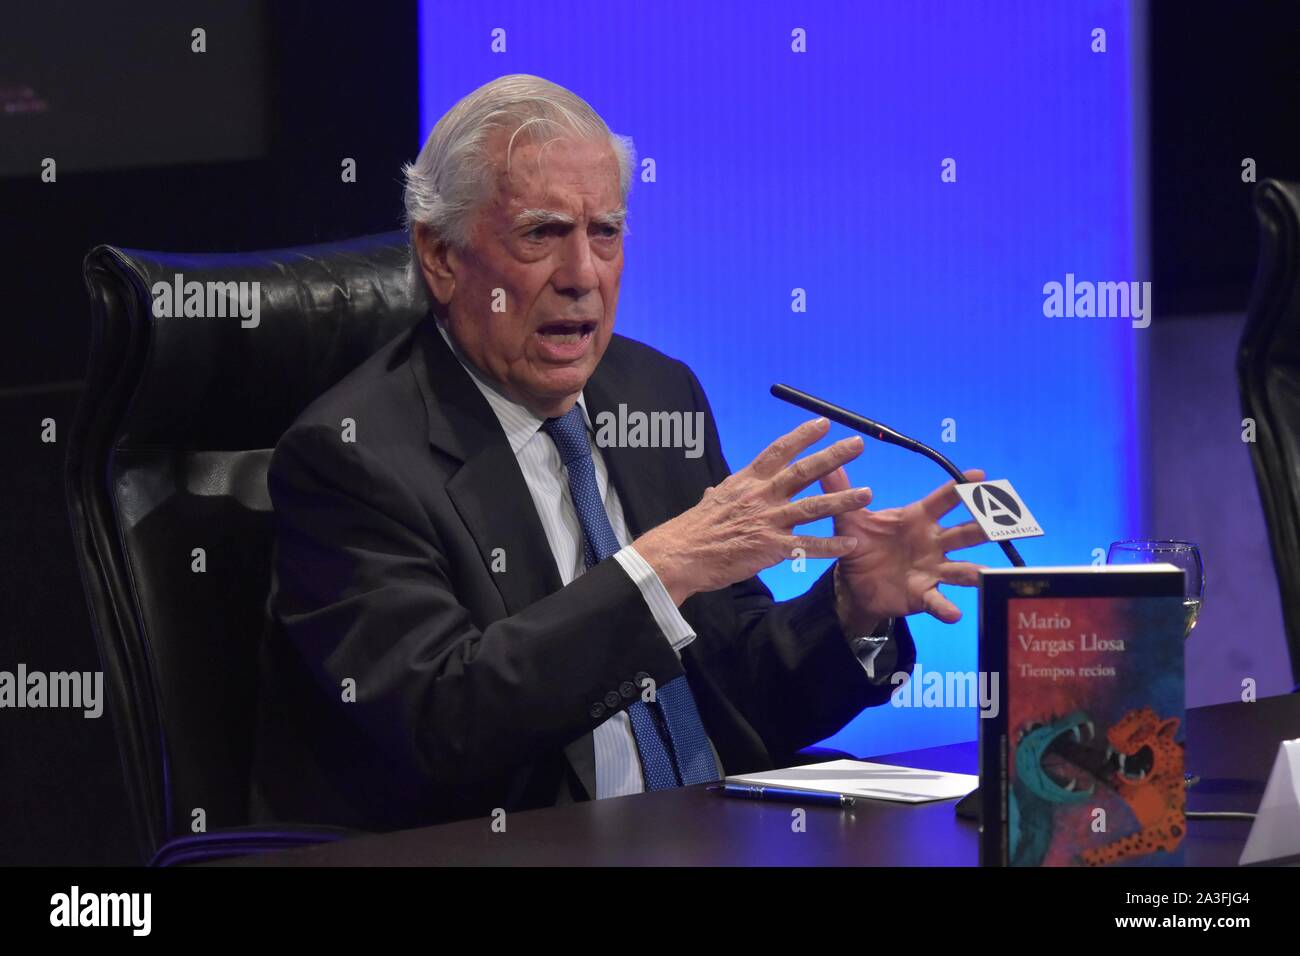 Madrid, España. 08 Oct, 2019. Mario Vargas Llosa durante tiempos recios reservar premiere en Madrid el martes, 08 de octubre de 2019 Créditos: Cordon PRESS/Alamy Live News Foto de stock